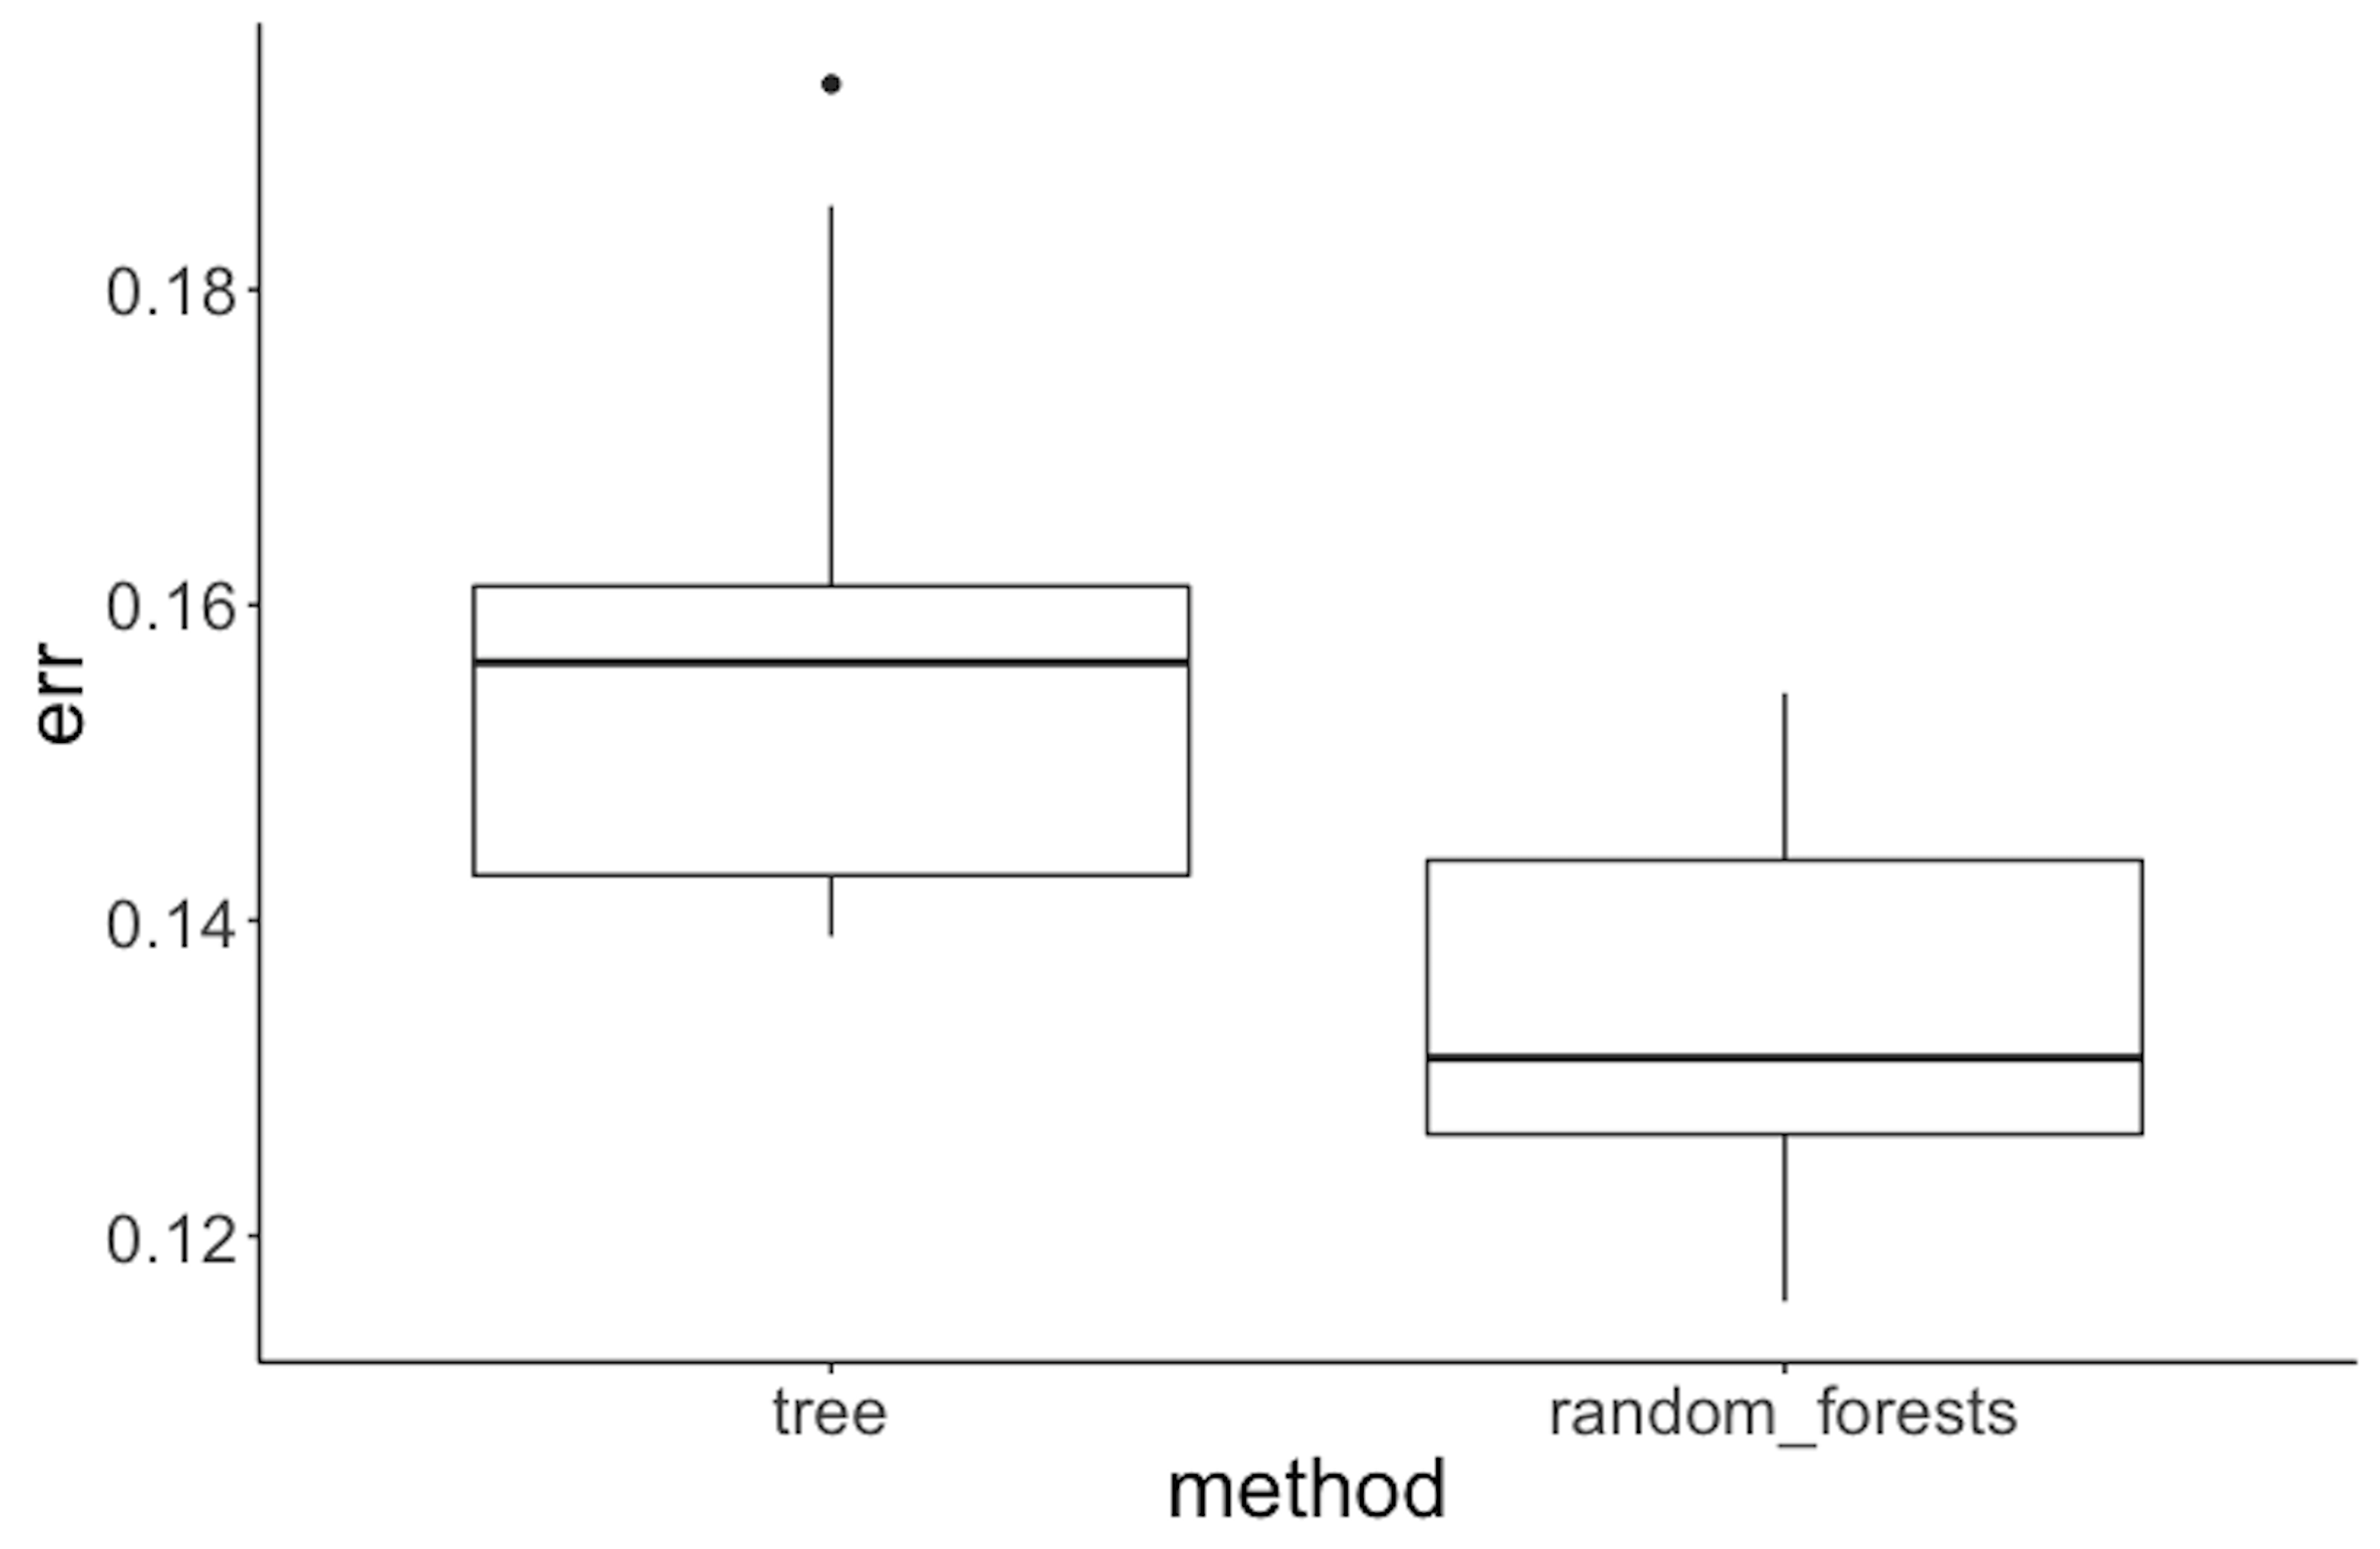 Performance of random forest v.s. tree model on the Alzheimer's disease data